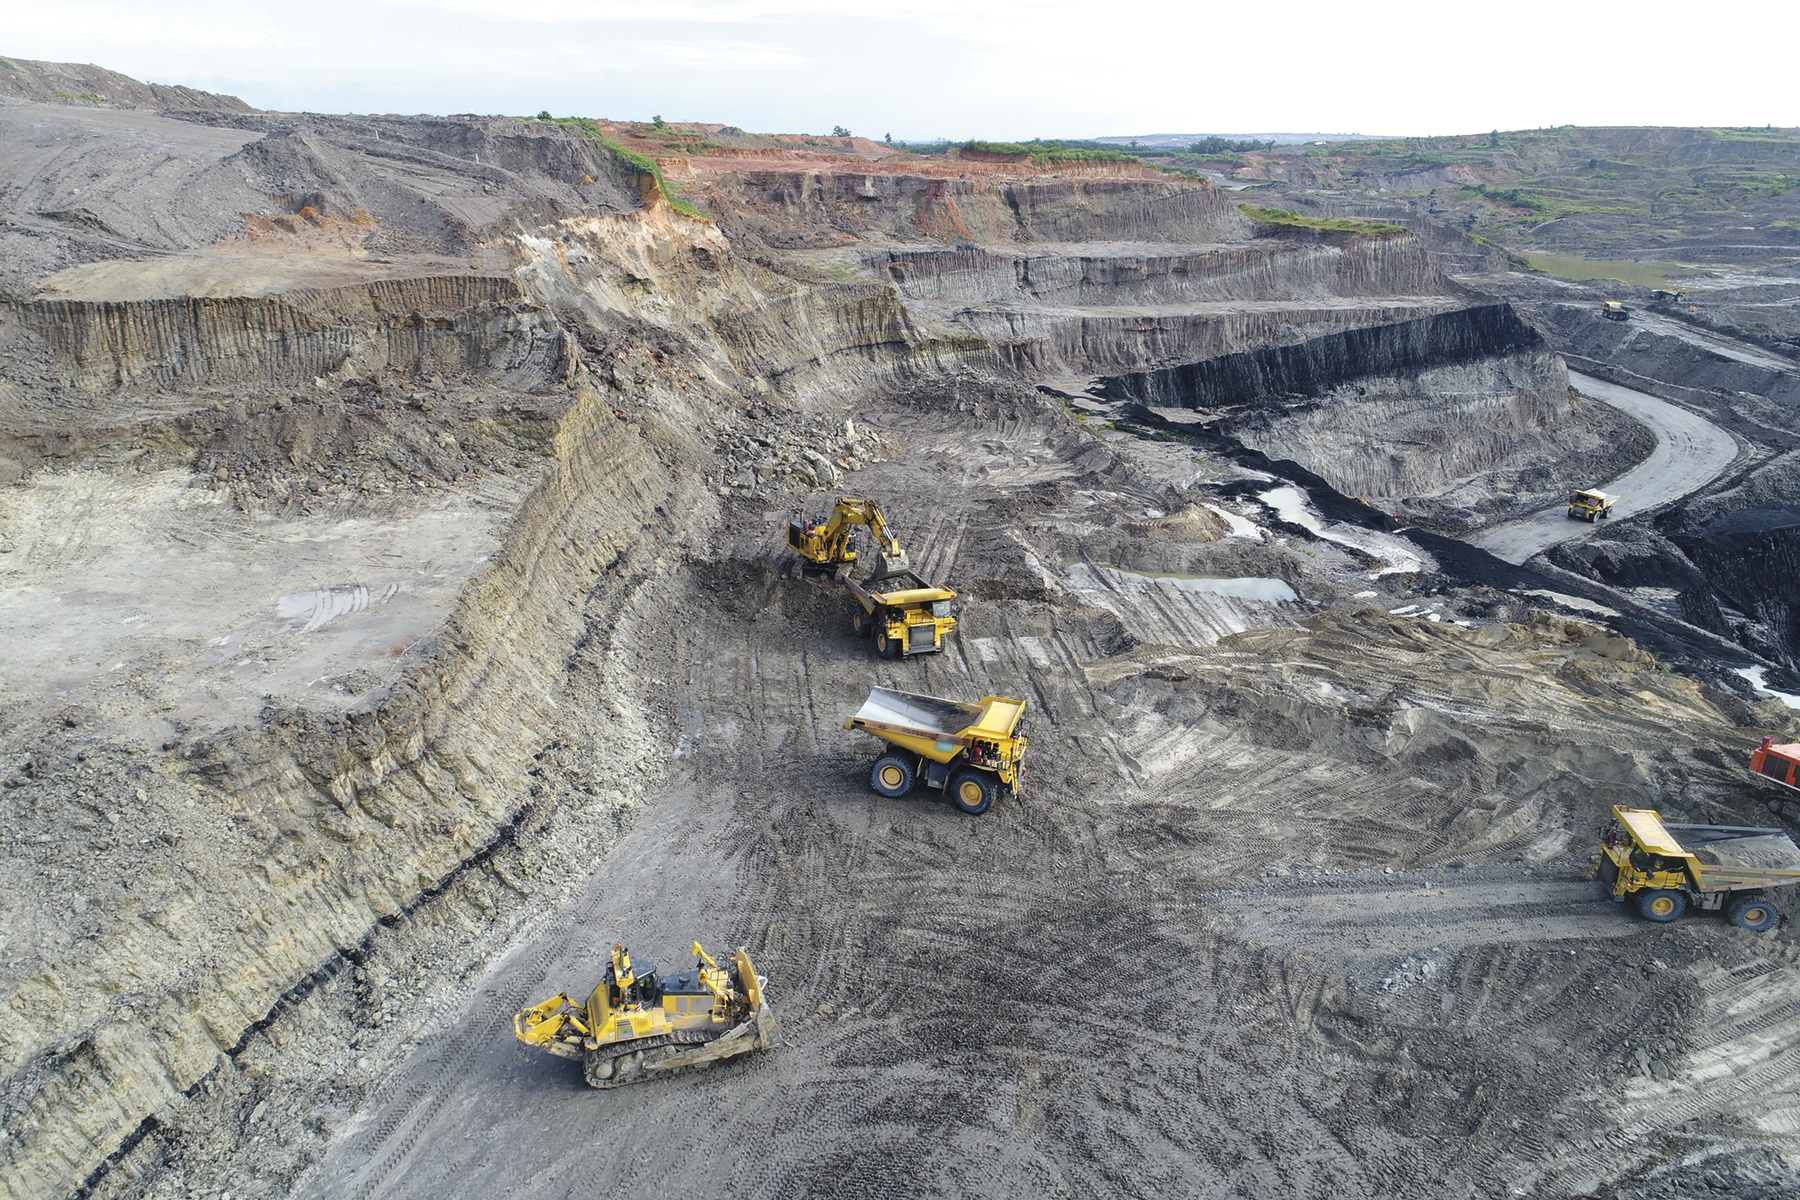 Fotografia. Tratores em meio a uma mina de carvão. Há desníveis no solo cinzento.